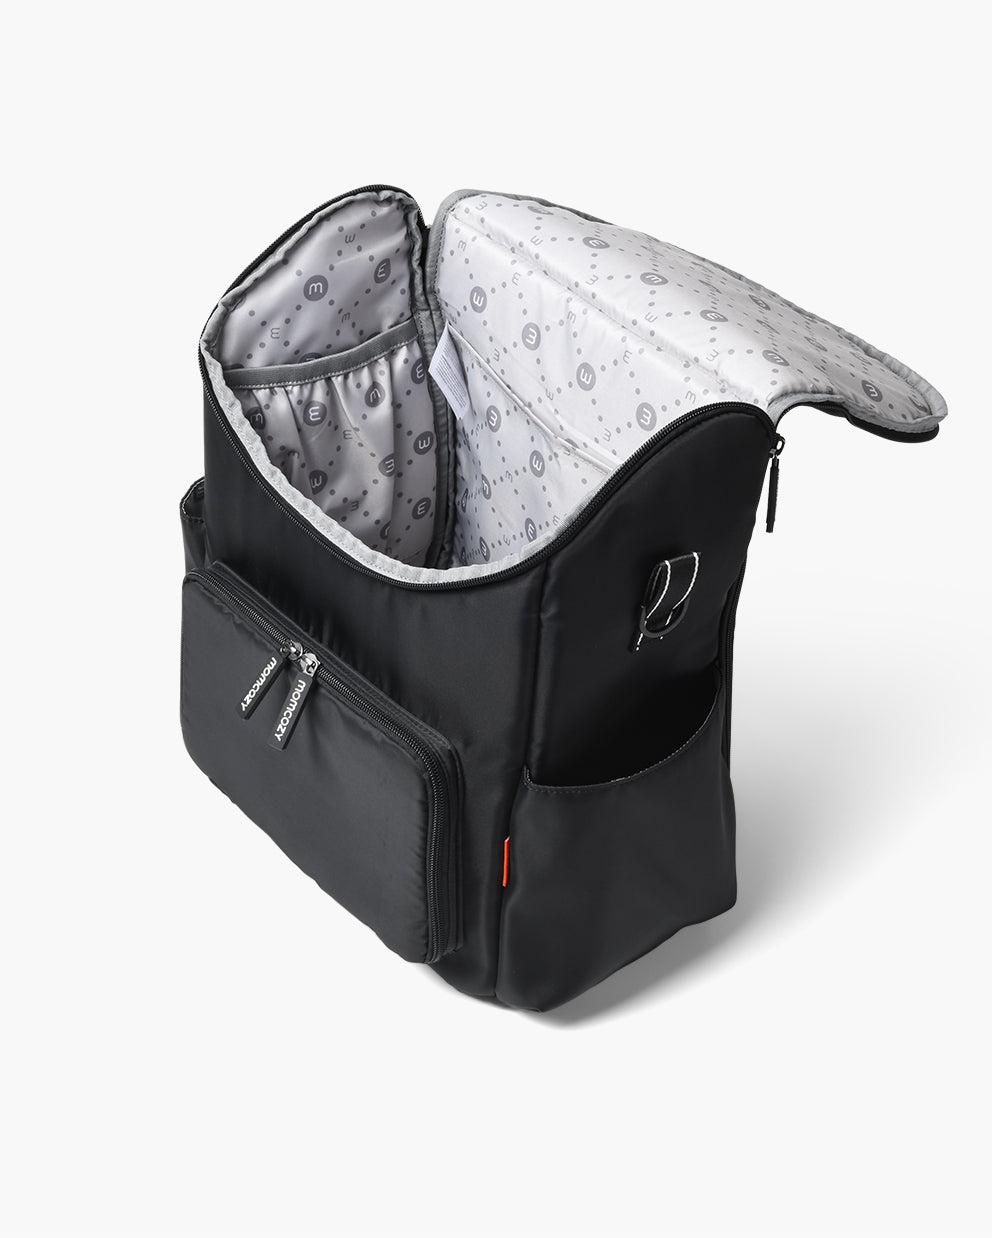 Baby Diaper Travel Bag Large Capacity